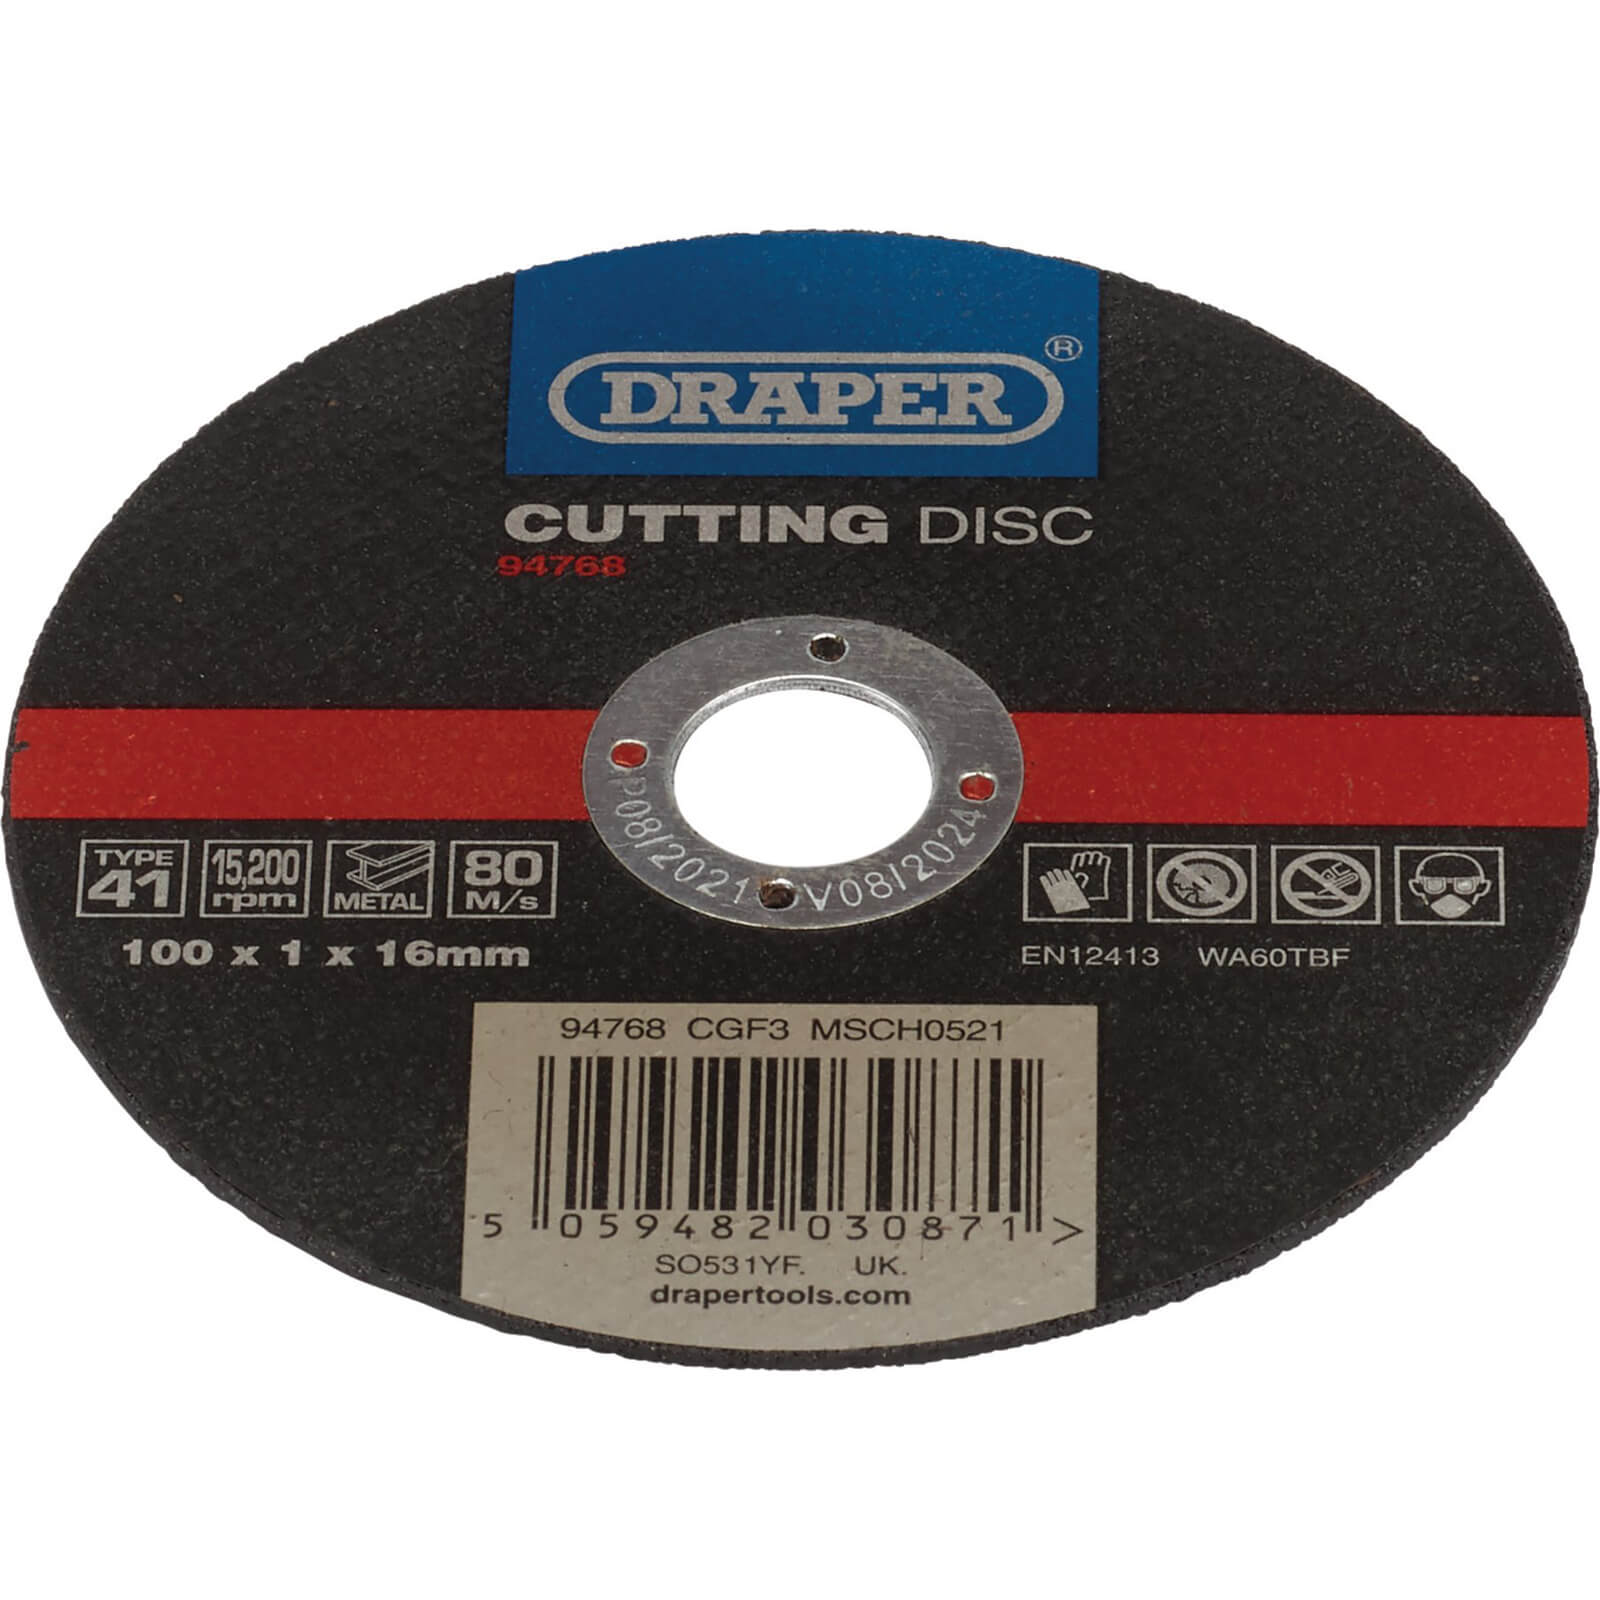 Draper Metal Cutting Disc 100mm 1mm 16mm